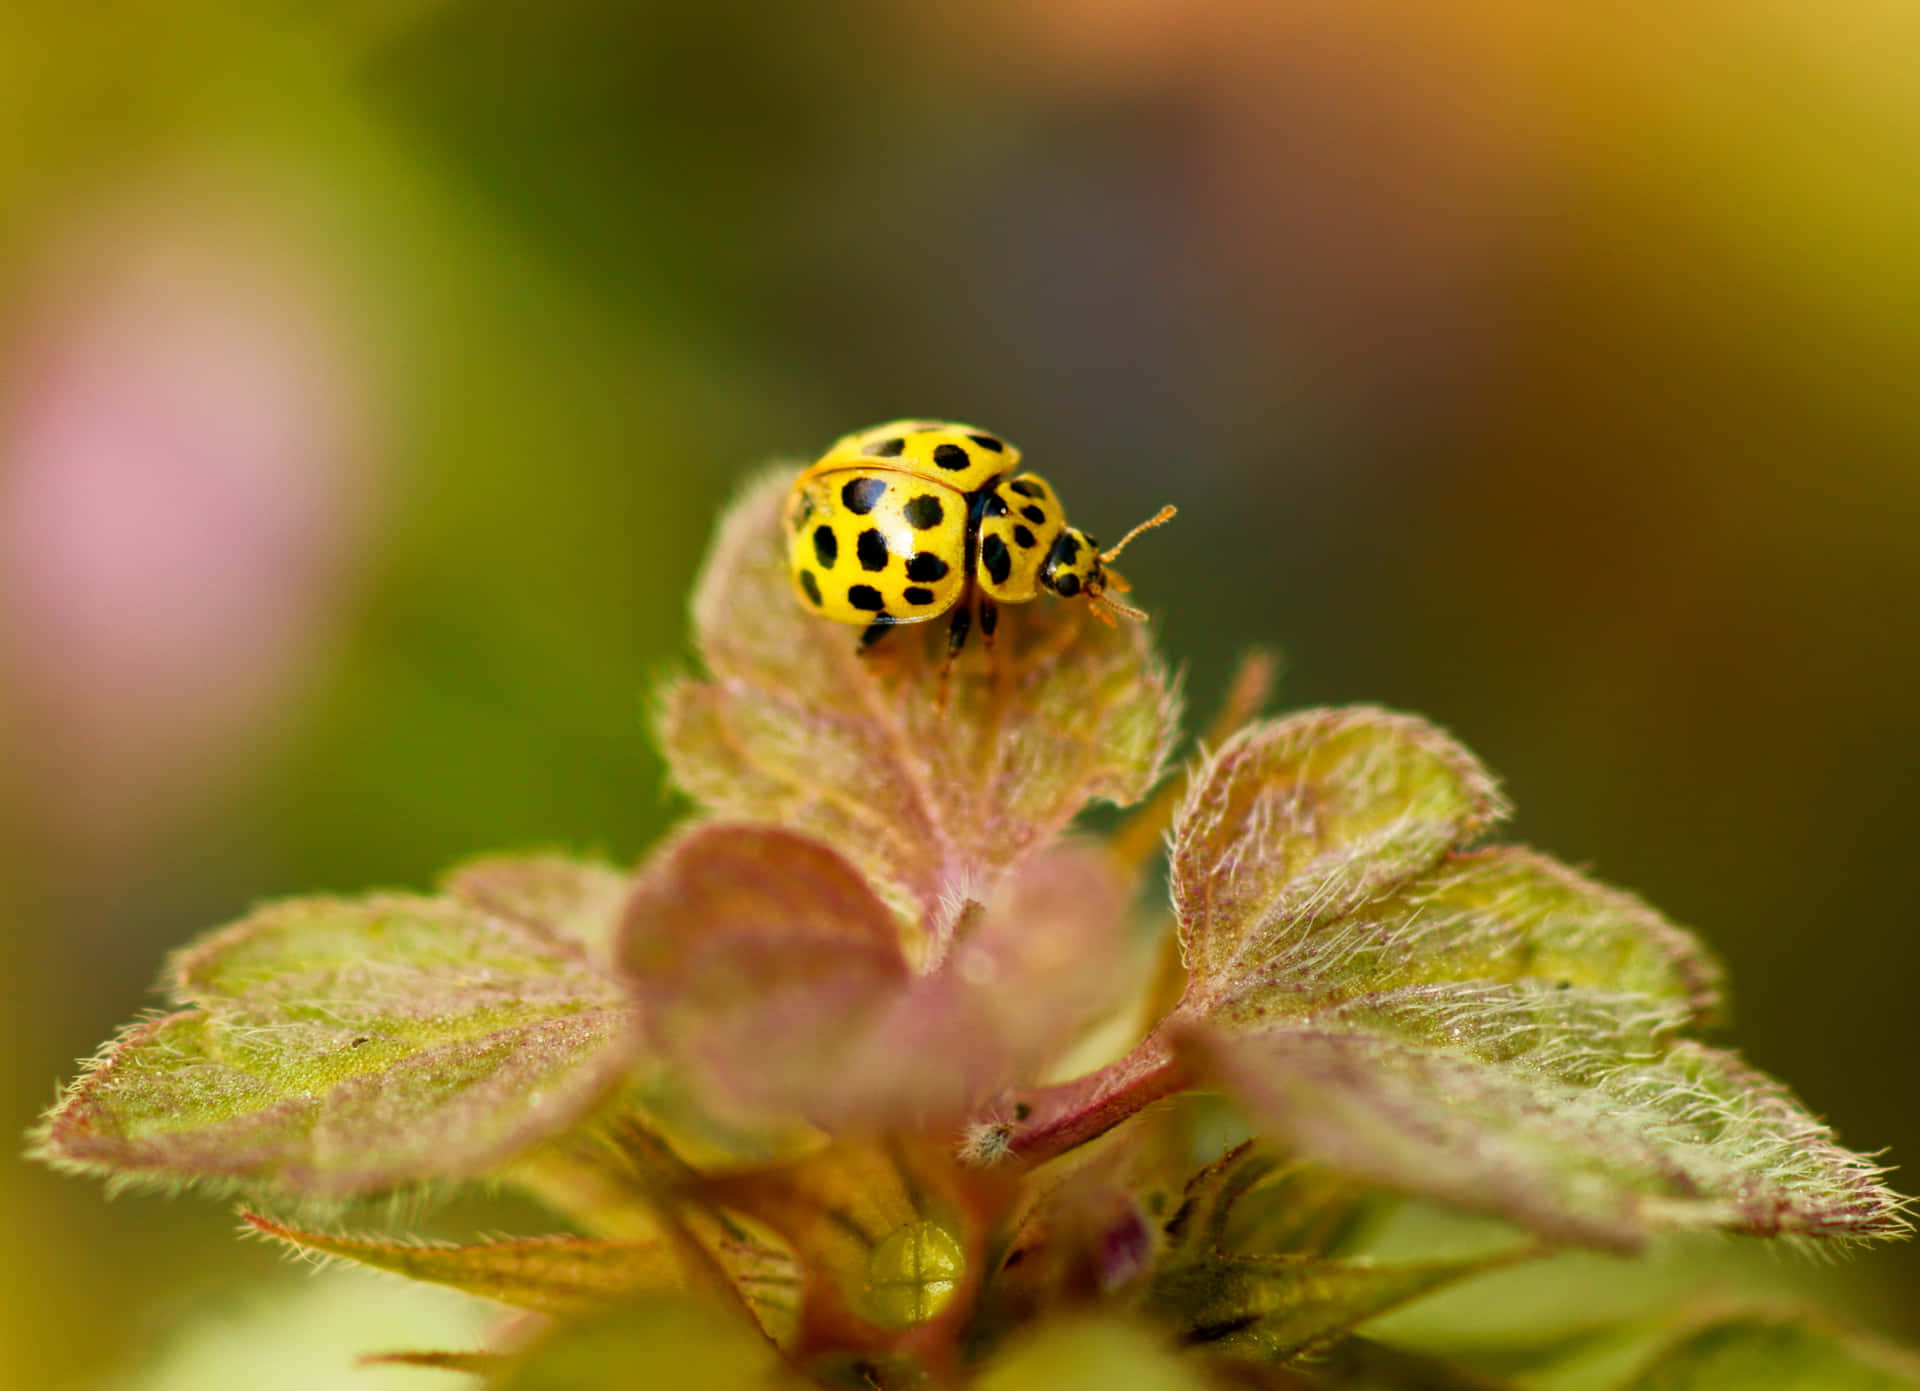 'A Cute Little Ladybug on a Green Leaf'